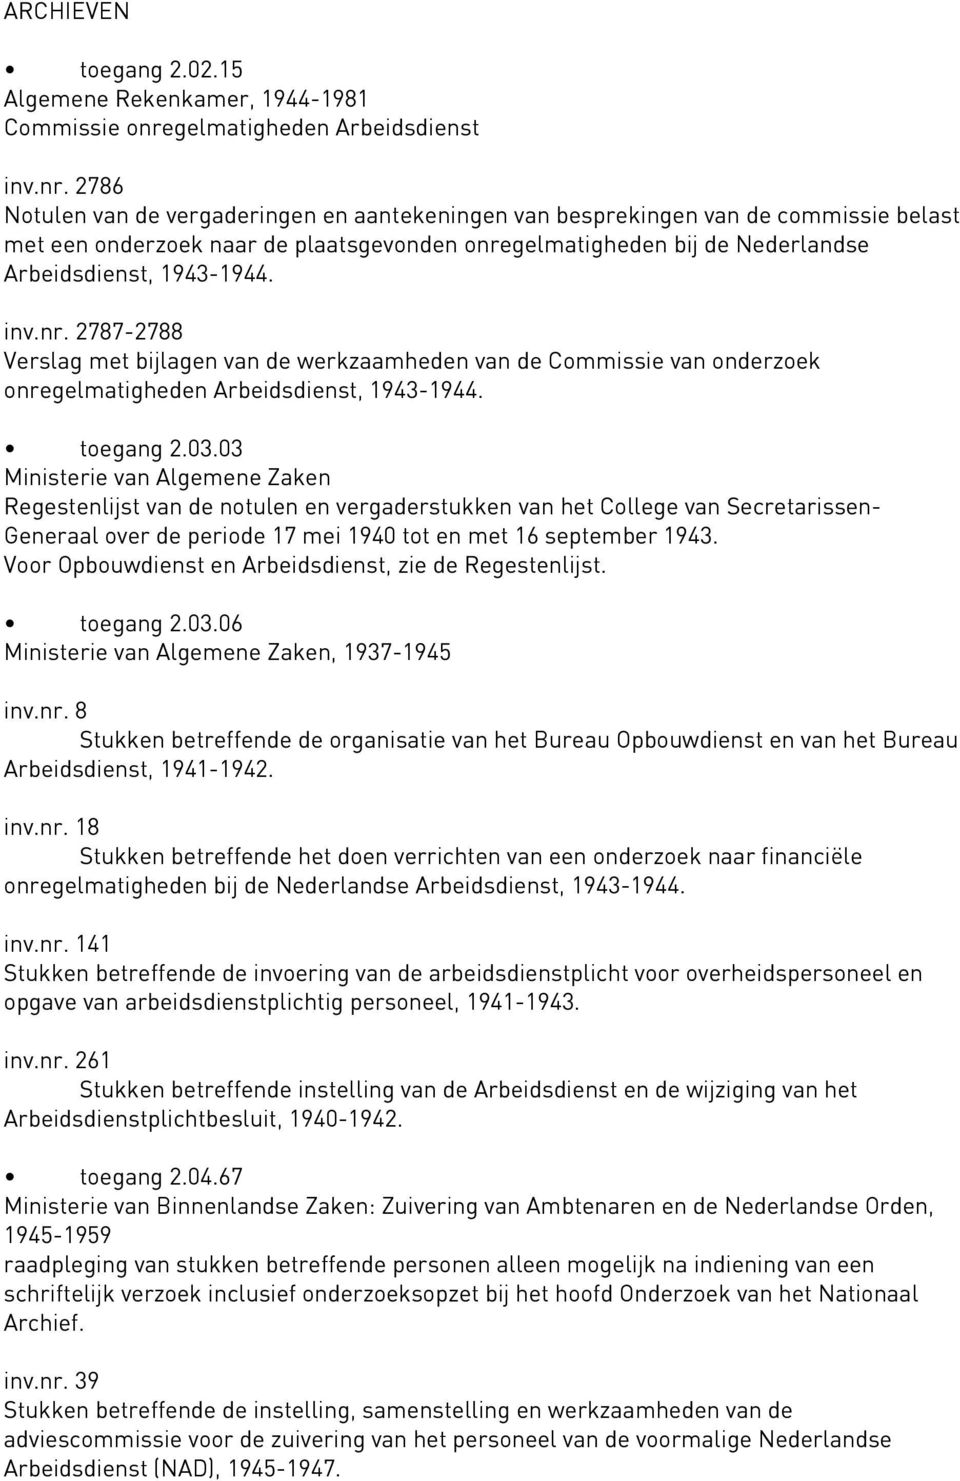 2786 Notulen van de vergaderingen en aantekeningen van besprekingen van de commissie belast met een onderzoek naar de plaatsgevonden onregelmatigheden bij de Nederlandse Arbeidsdienst, 1943-1944. inv.